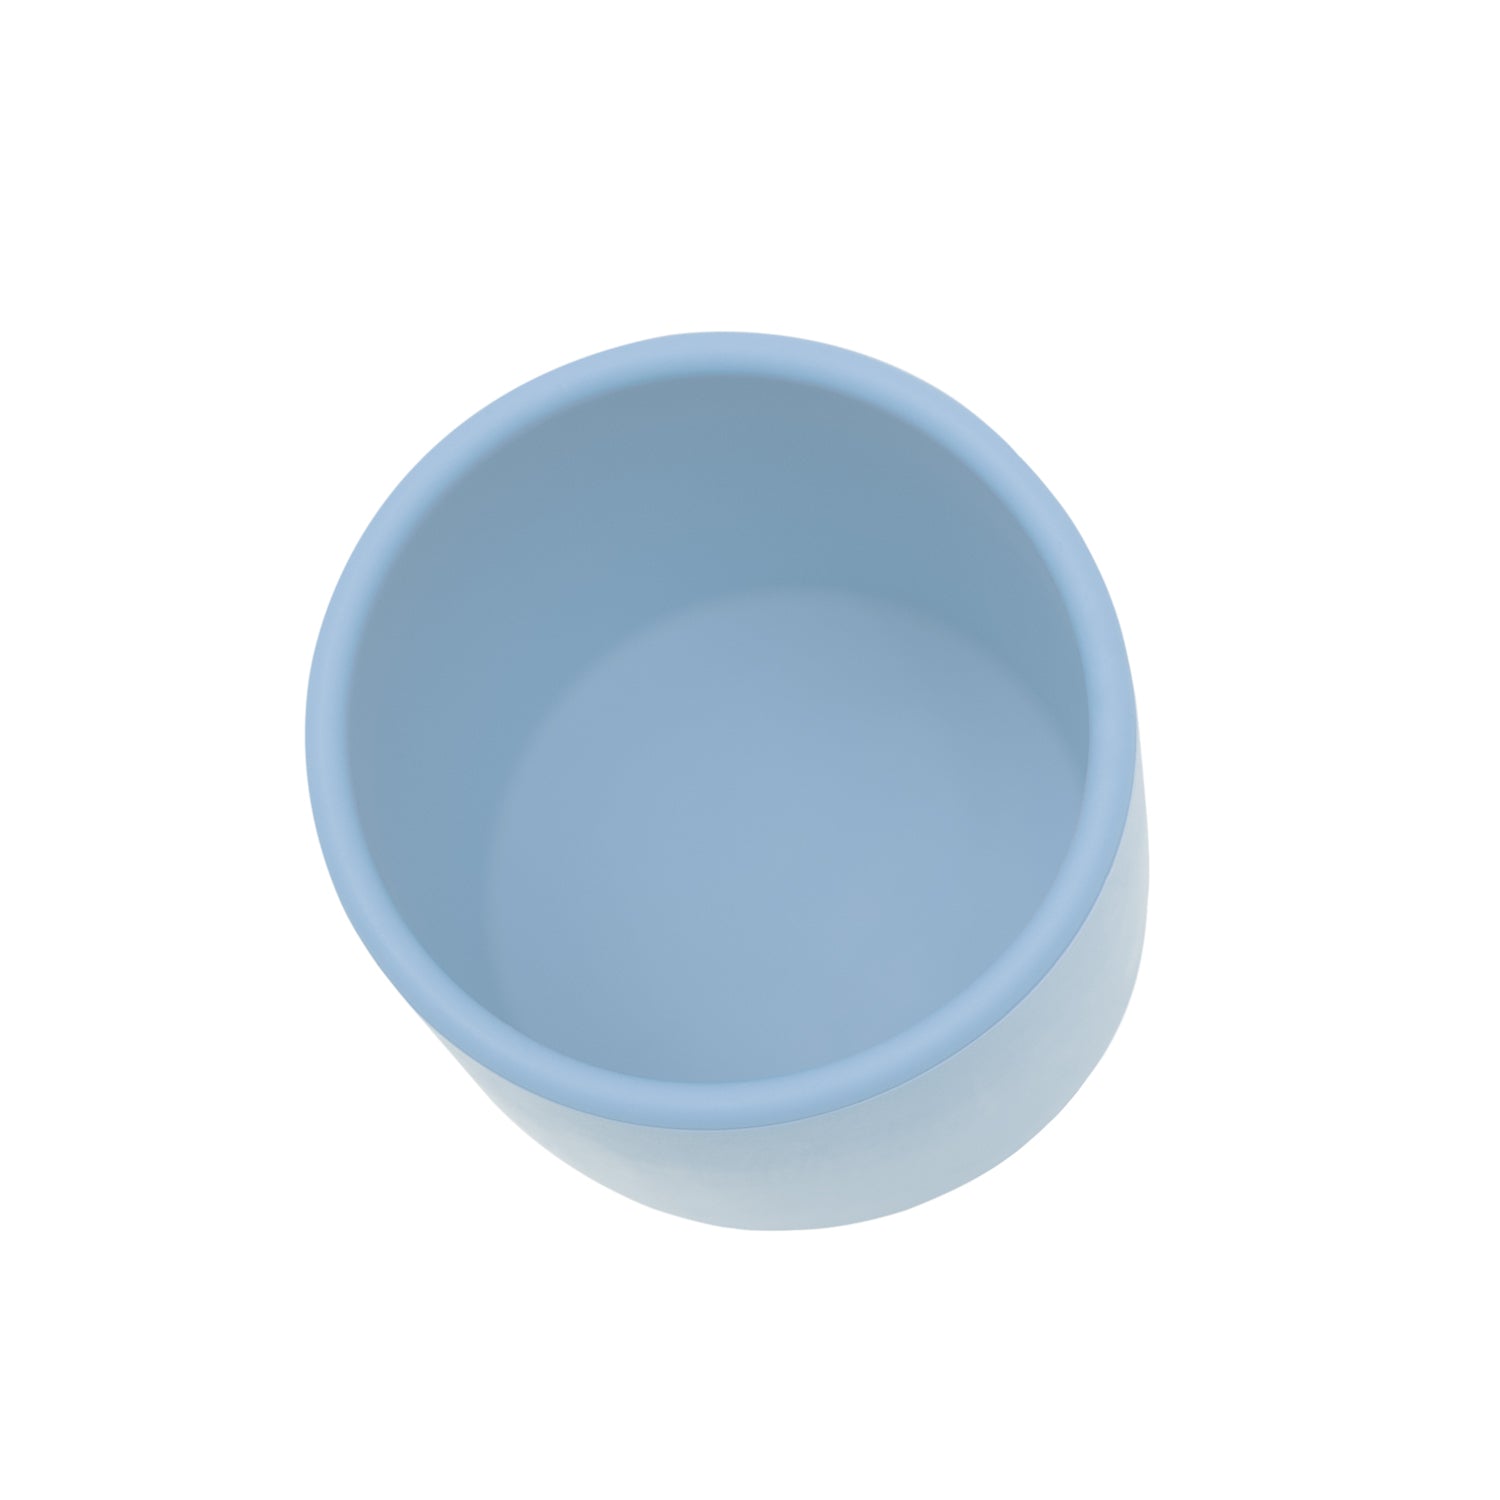 Grip cup - Powder Blue